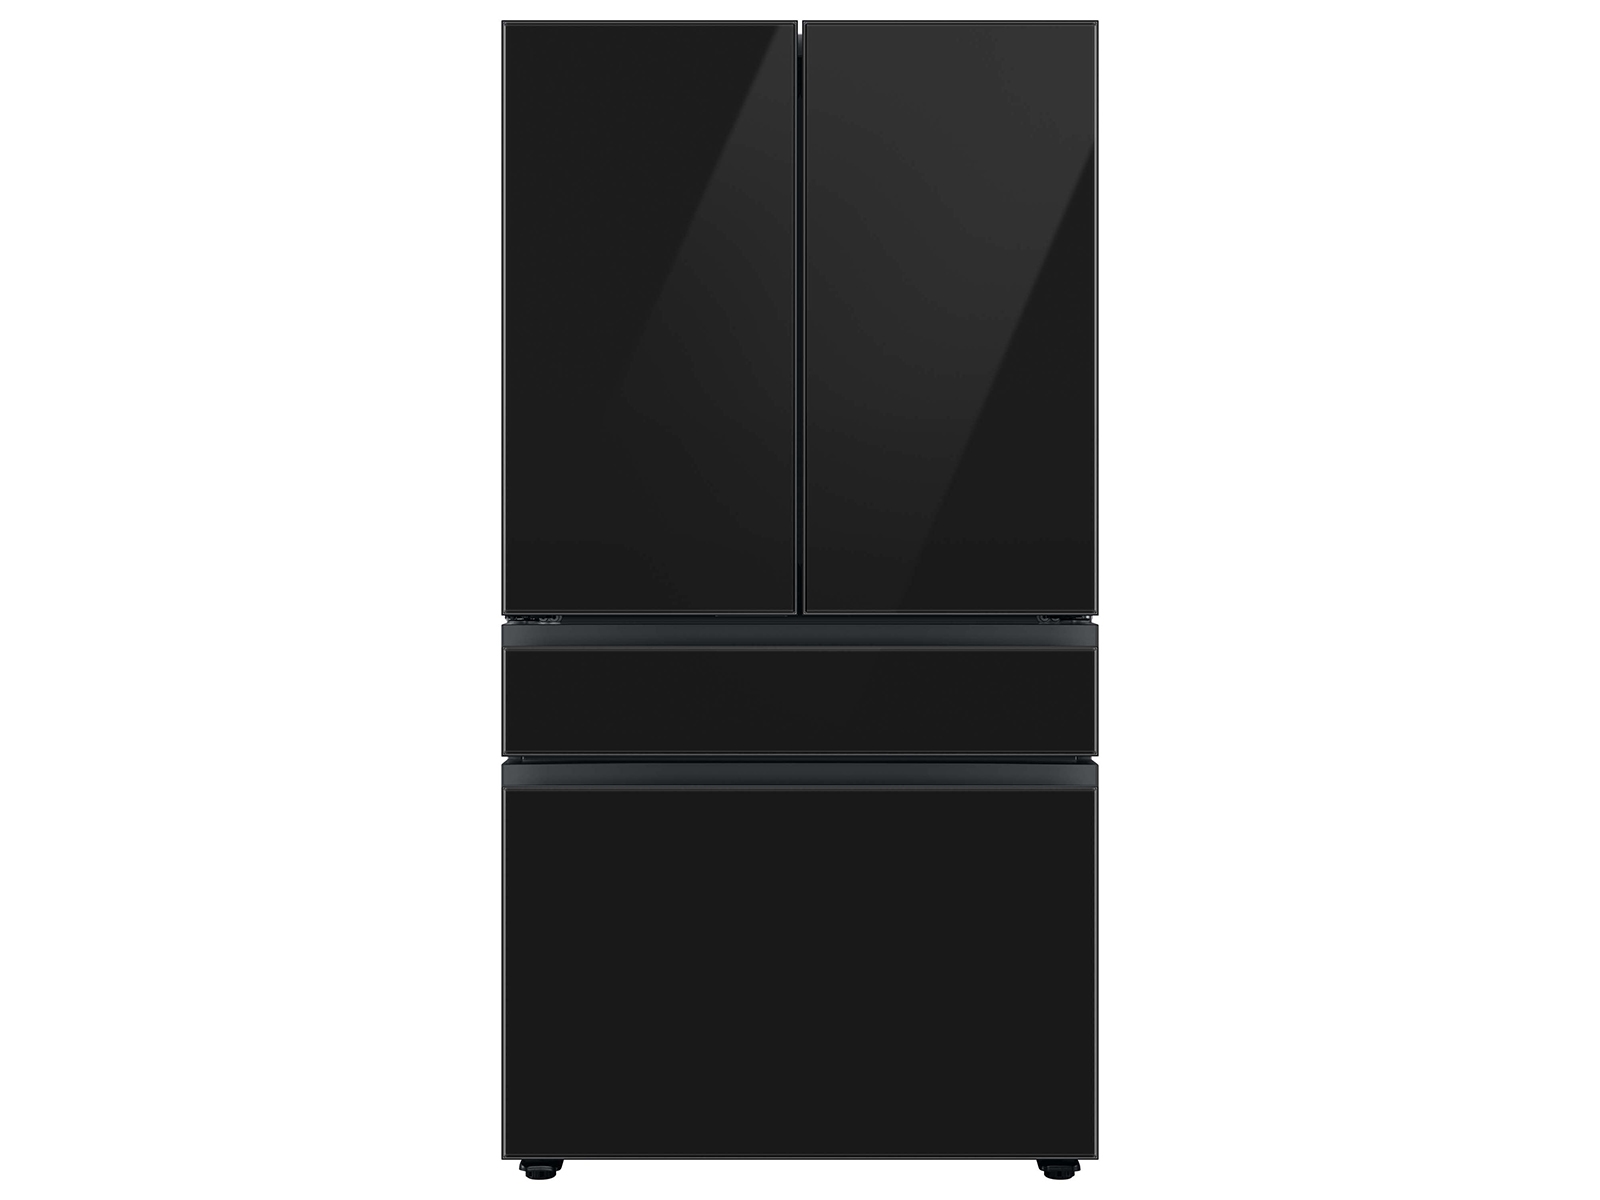 Bespoke 4-Door French Door Refrigerator (23 cu. ft.) with Customizable Door Panel Colors and Beverage Center&trade; in Charcoal Glass